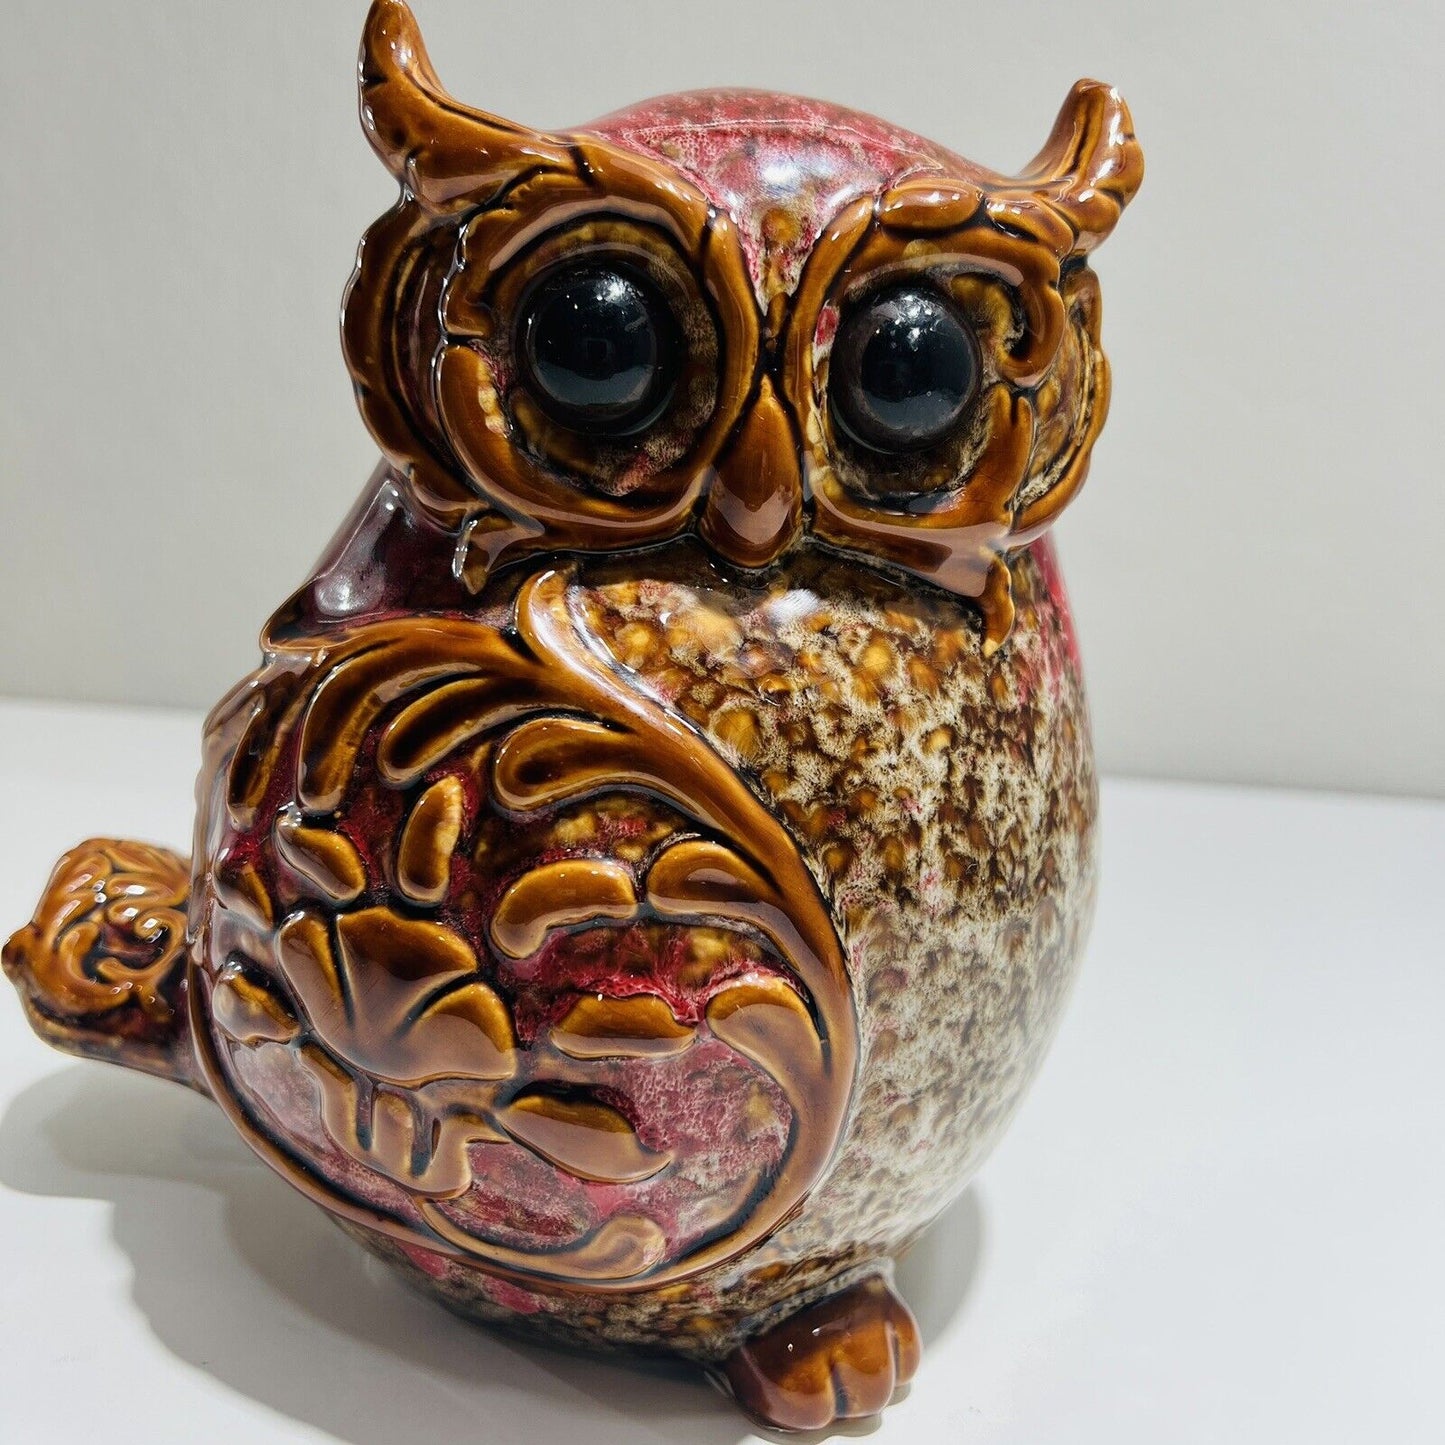 Burton and Burton Owl Pottery Ceramic Figurine Sculpture 2012 Home Decor